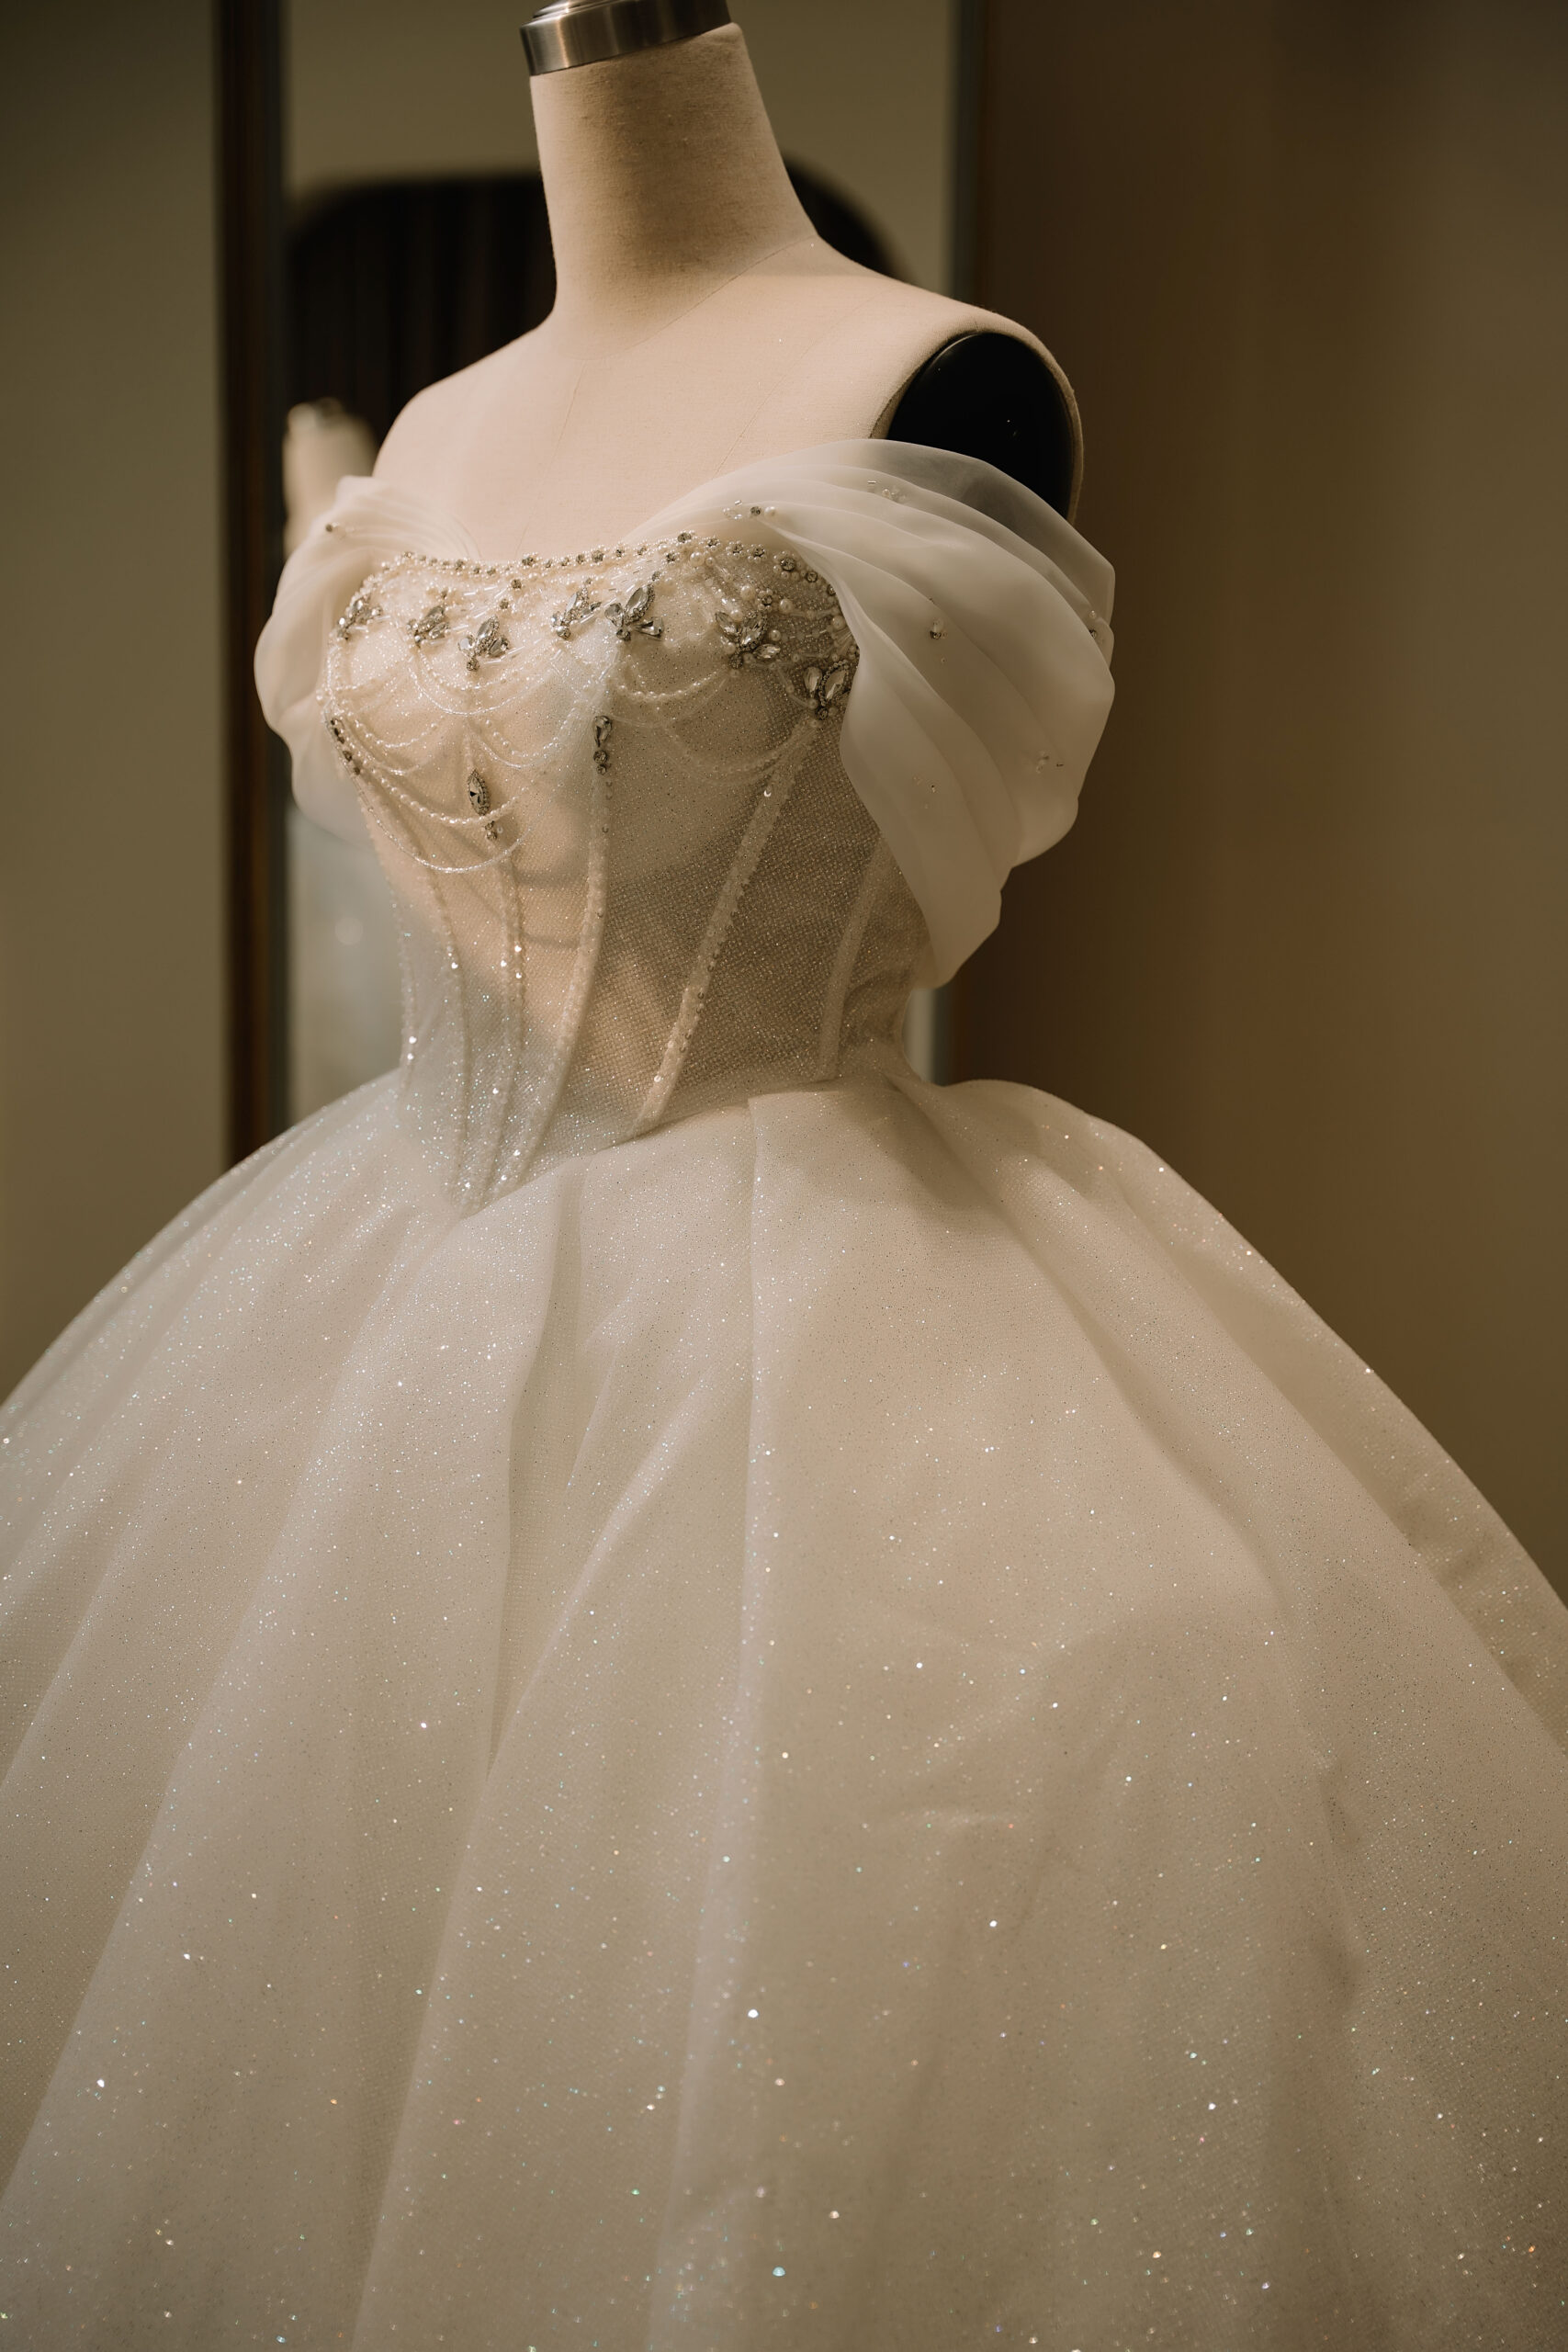 Váy cưới trễ vai là một trong những kiểu dáng váy cưới được các cô dâu yêu thích bởi với thiết kế độc đáo mẫu váy cưới này tạo nên nét đẹp gợi cảm cho cô dâu khi mặc trong ngày cưới trọng đại